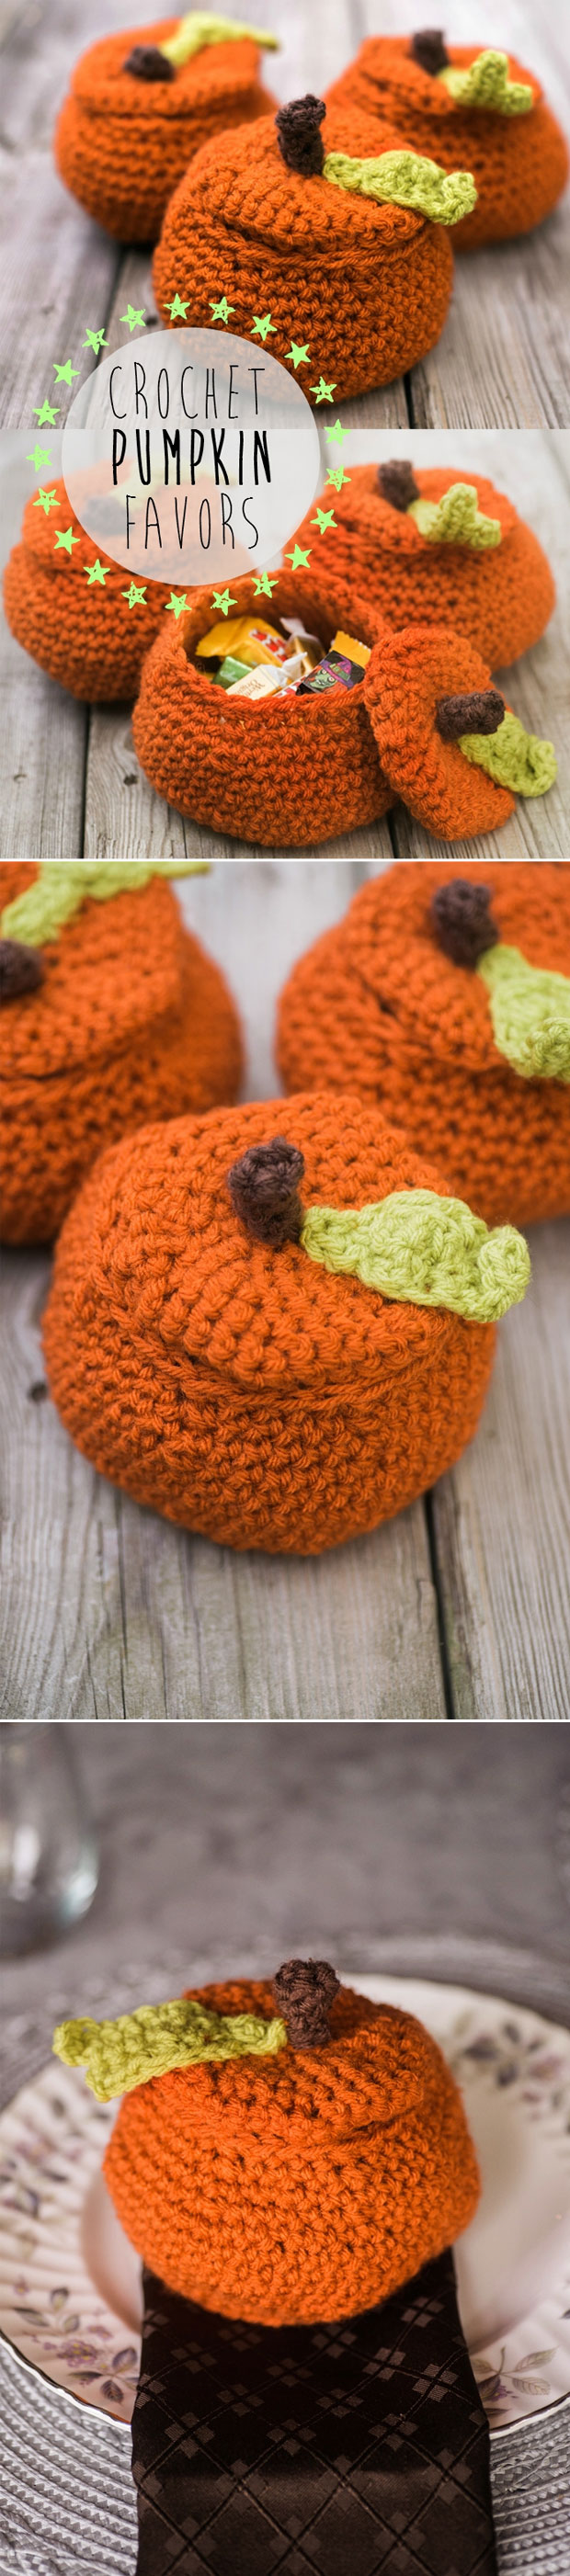 DIY Crochet Pumpkin Halloween Favor Ideas